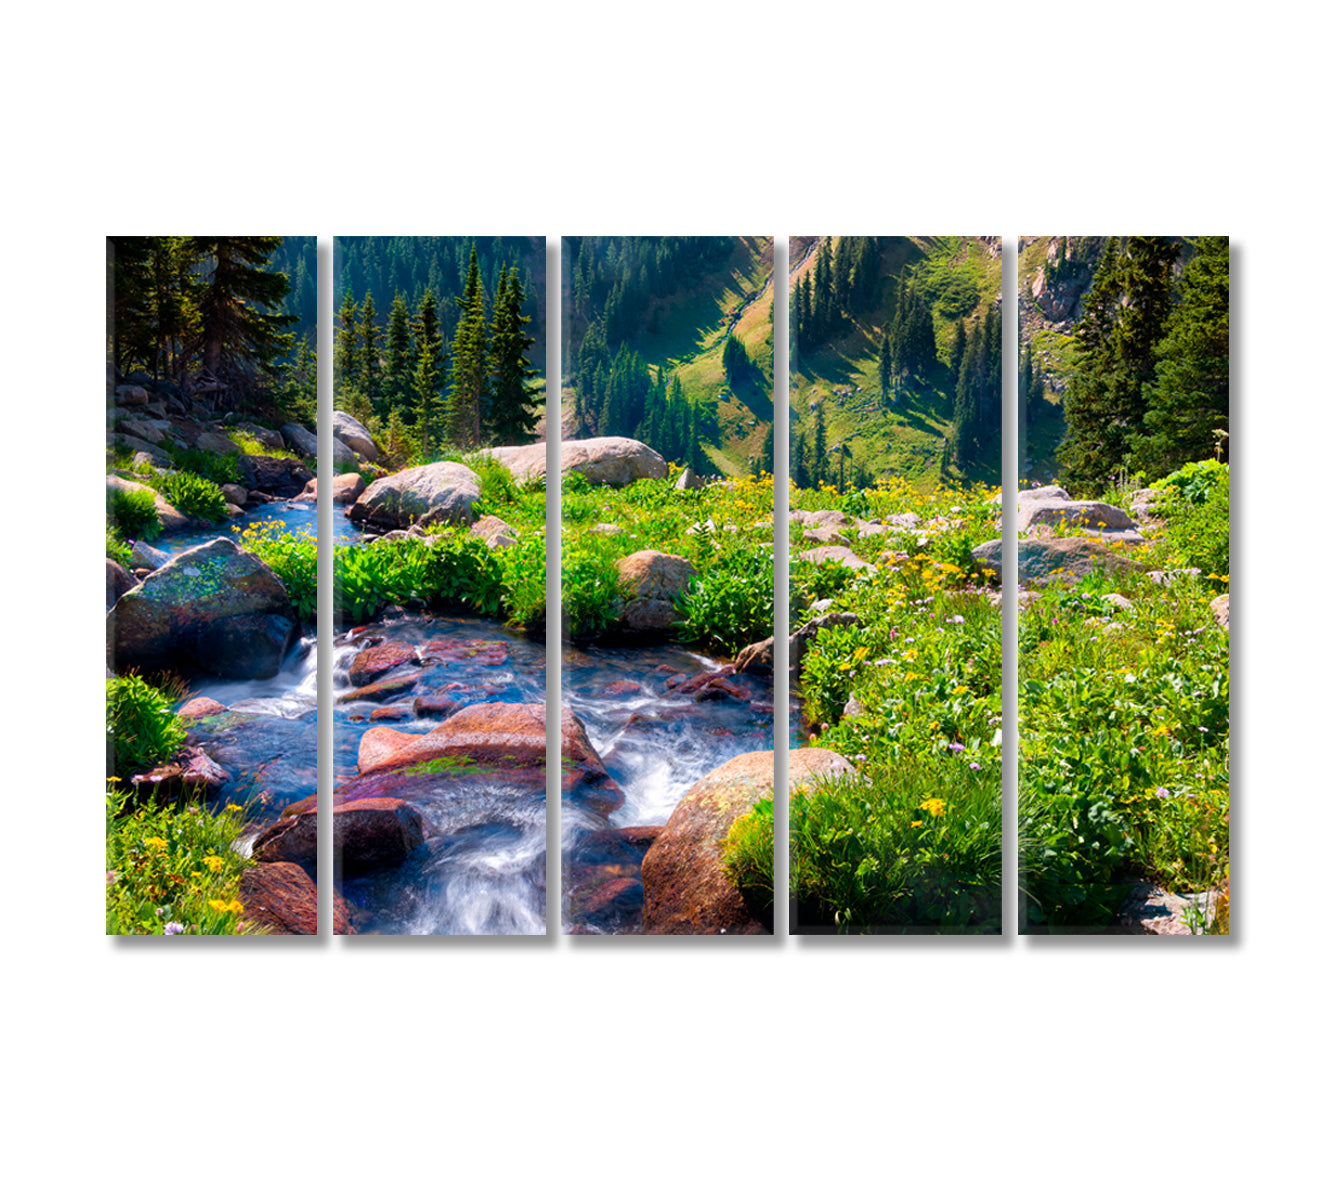 Nature Landscape with Boulder Creek River Canvas Print-Canvas Print-CetArt-5 Panels-36x24 inches-CetArt